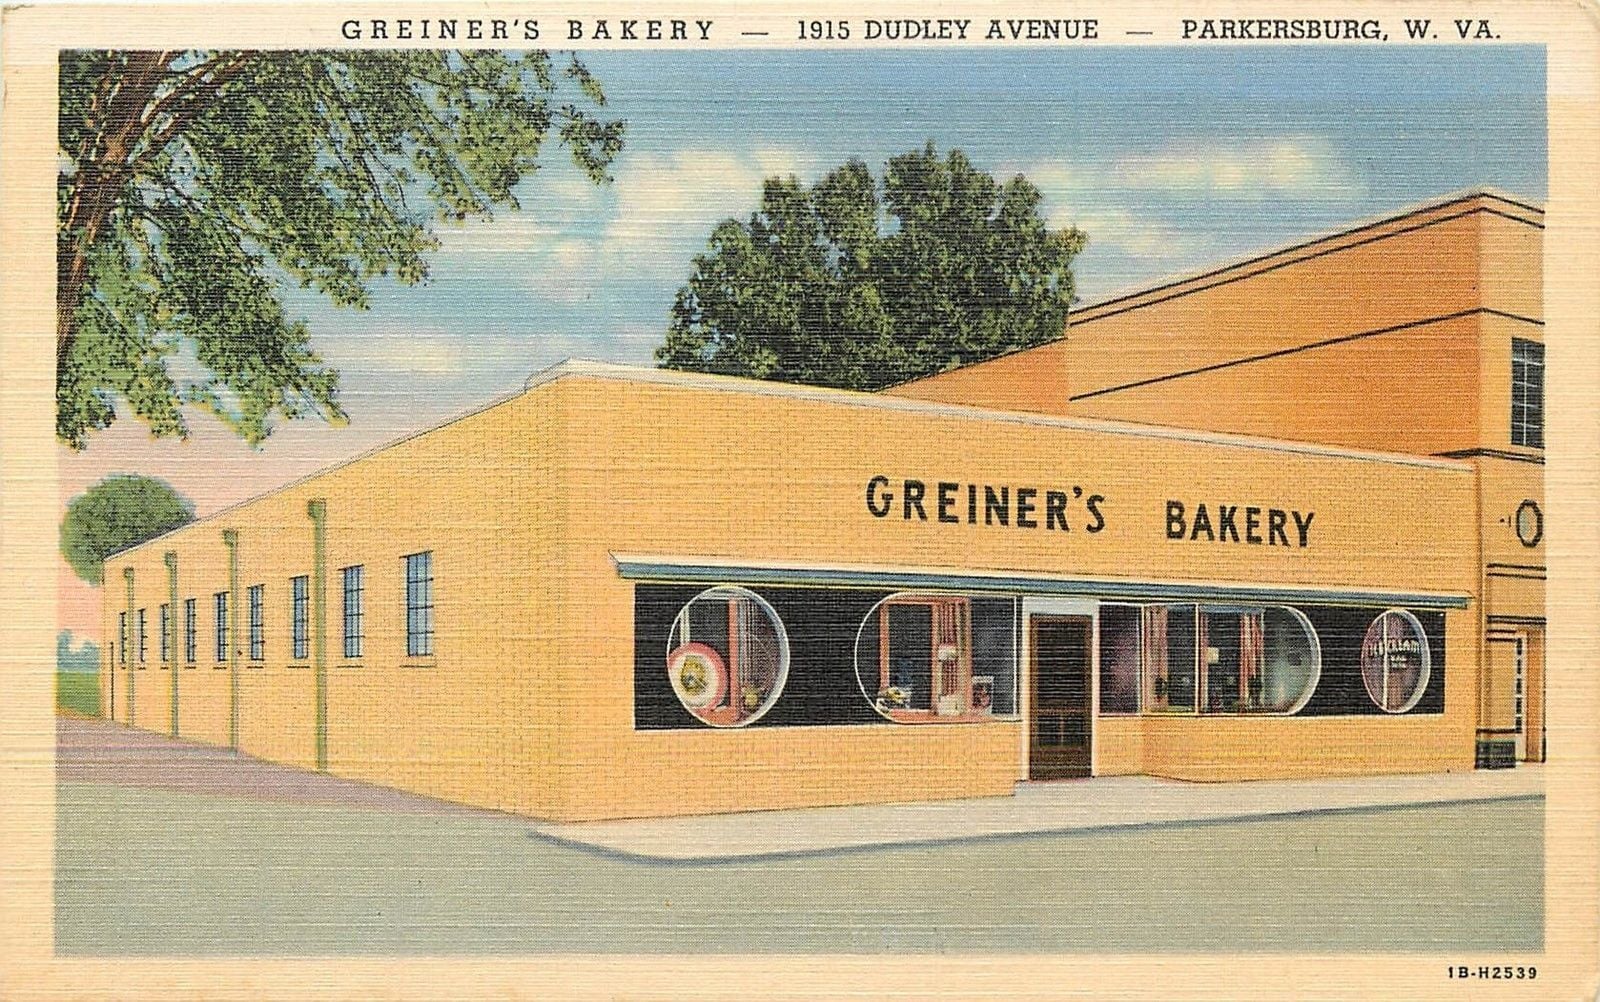 DR. PATRICK’S POSTCARD ROADSIDE: Greiner’s Bakery